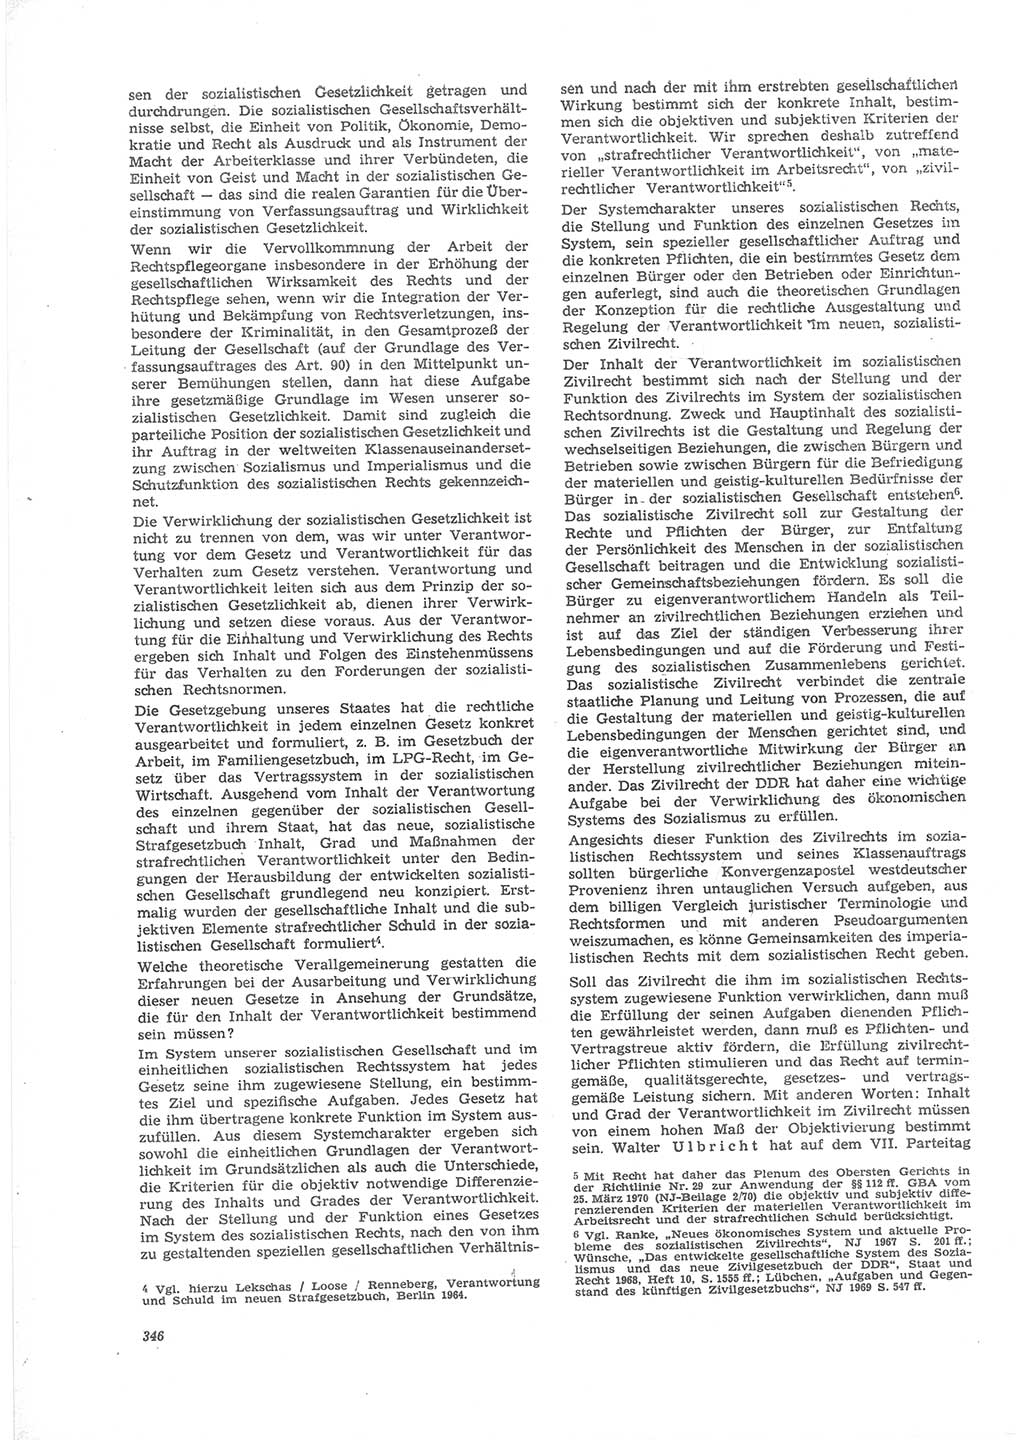 Neue Justiz (NJ), Zeitschrift für Recht und Rechtswissenschaft [Deutsche Demokratische Republik (DDR)], 24. Jahrgang 1970, Seite 346 (NJ DDR 1970, S. 346)